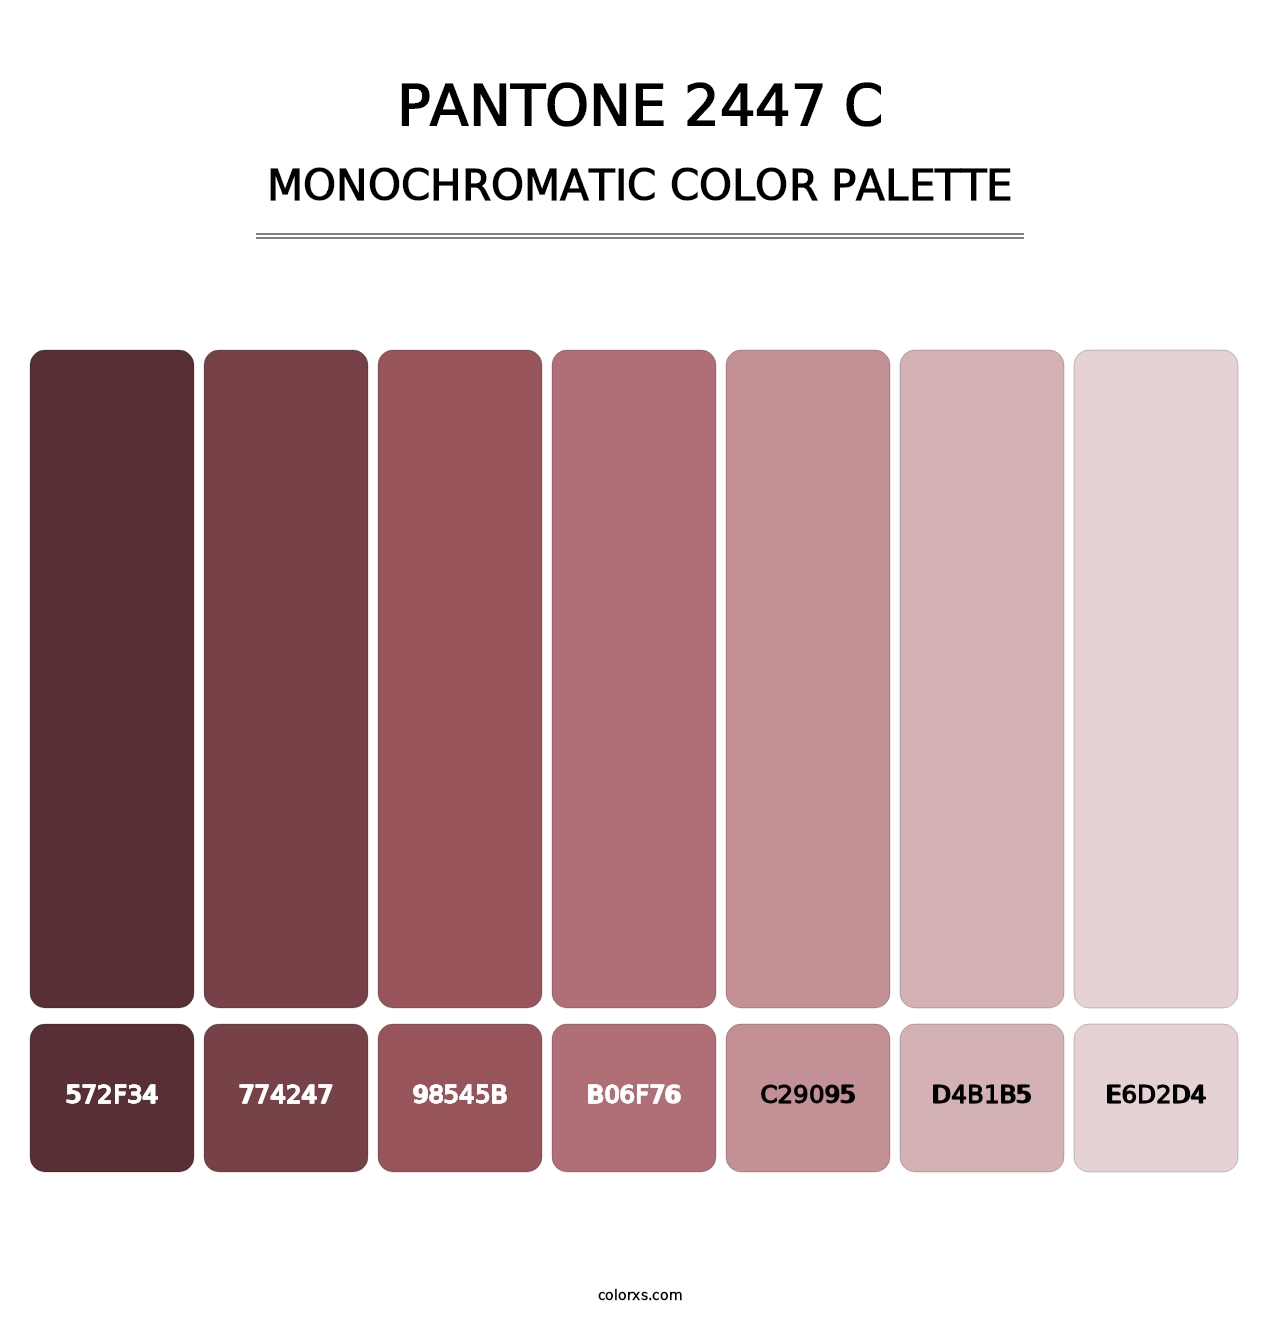 PANTONE 2447 C - Monochromatic Color Palette